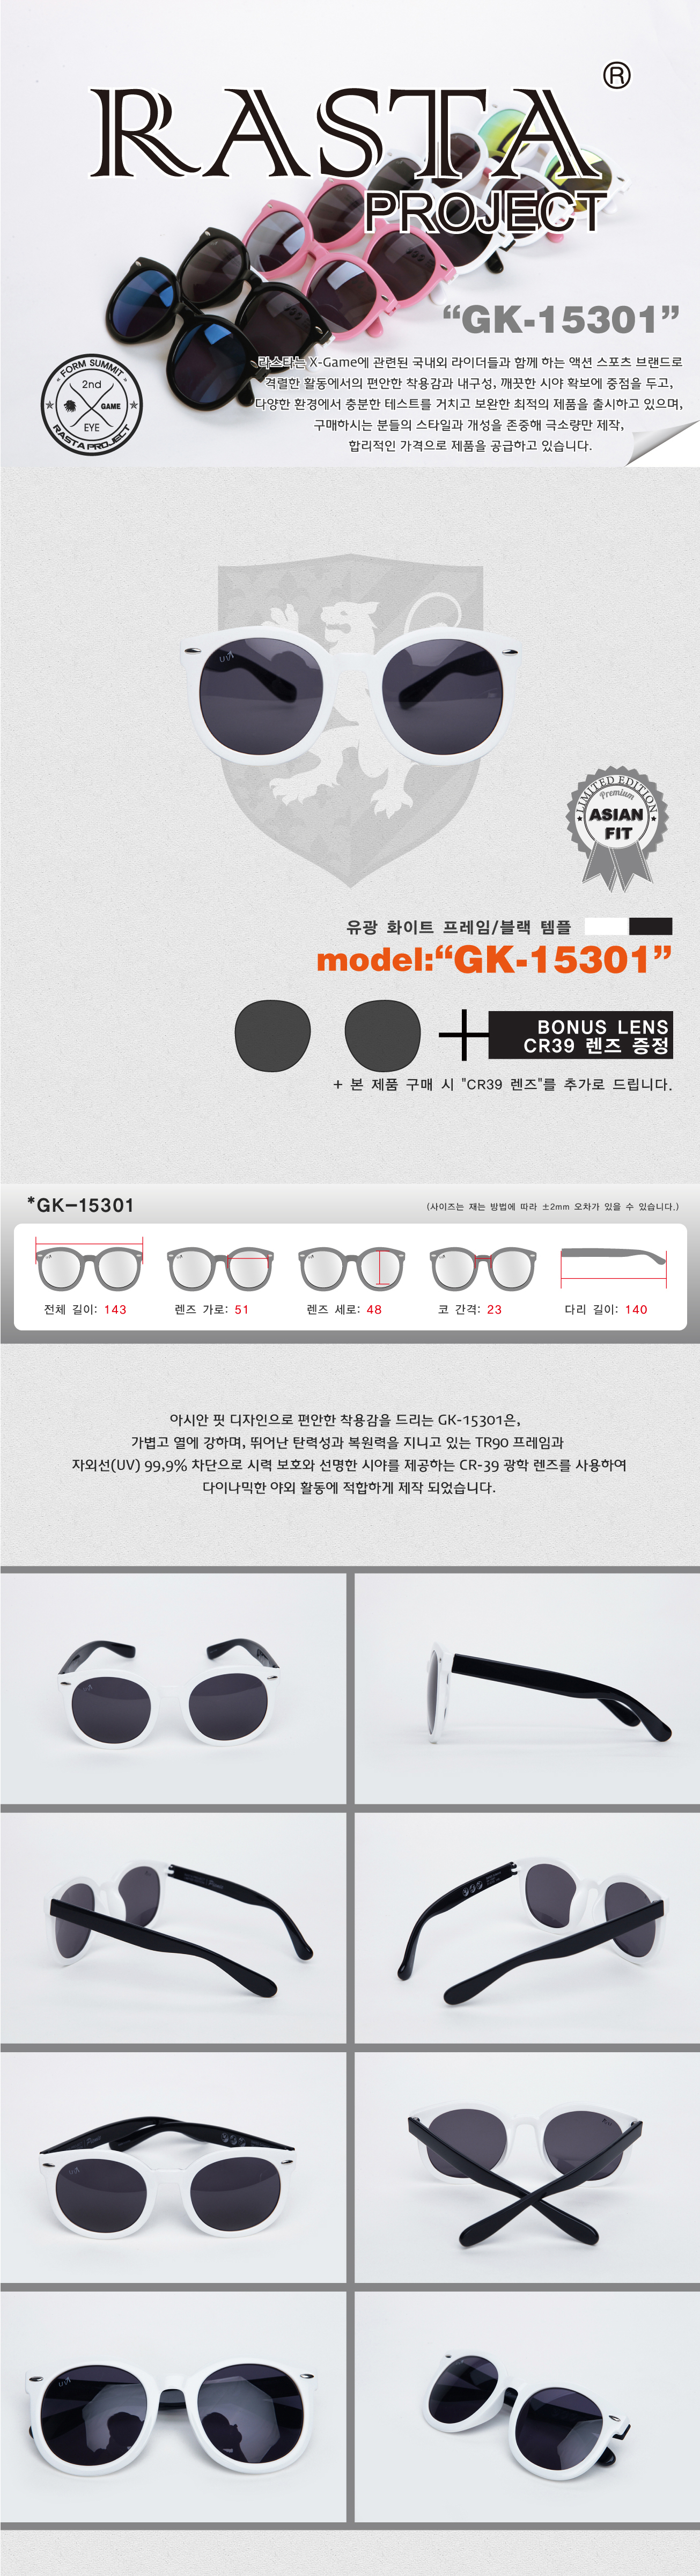 GK-15301 Gloss White/Black